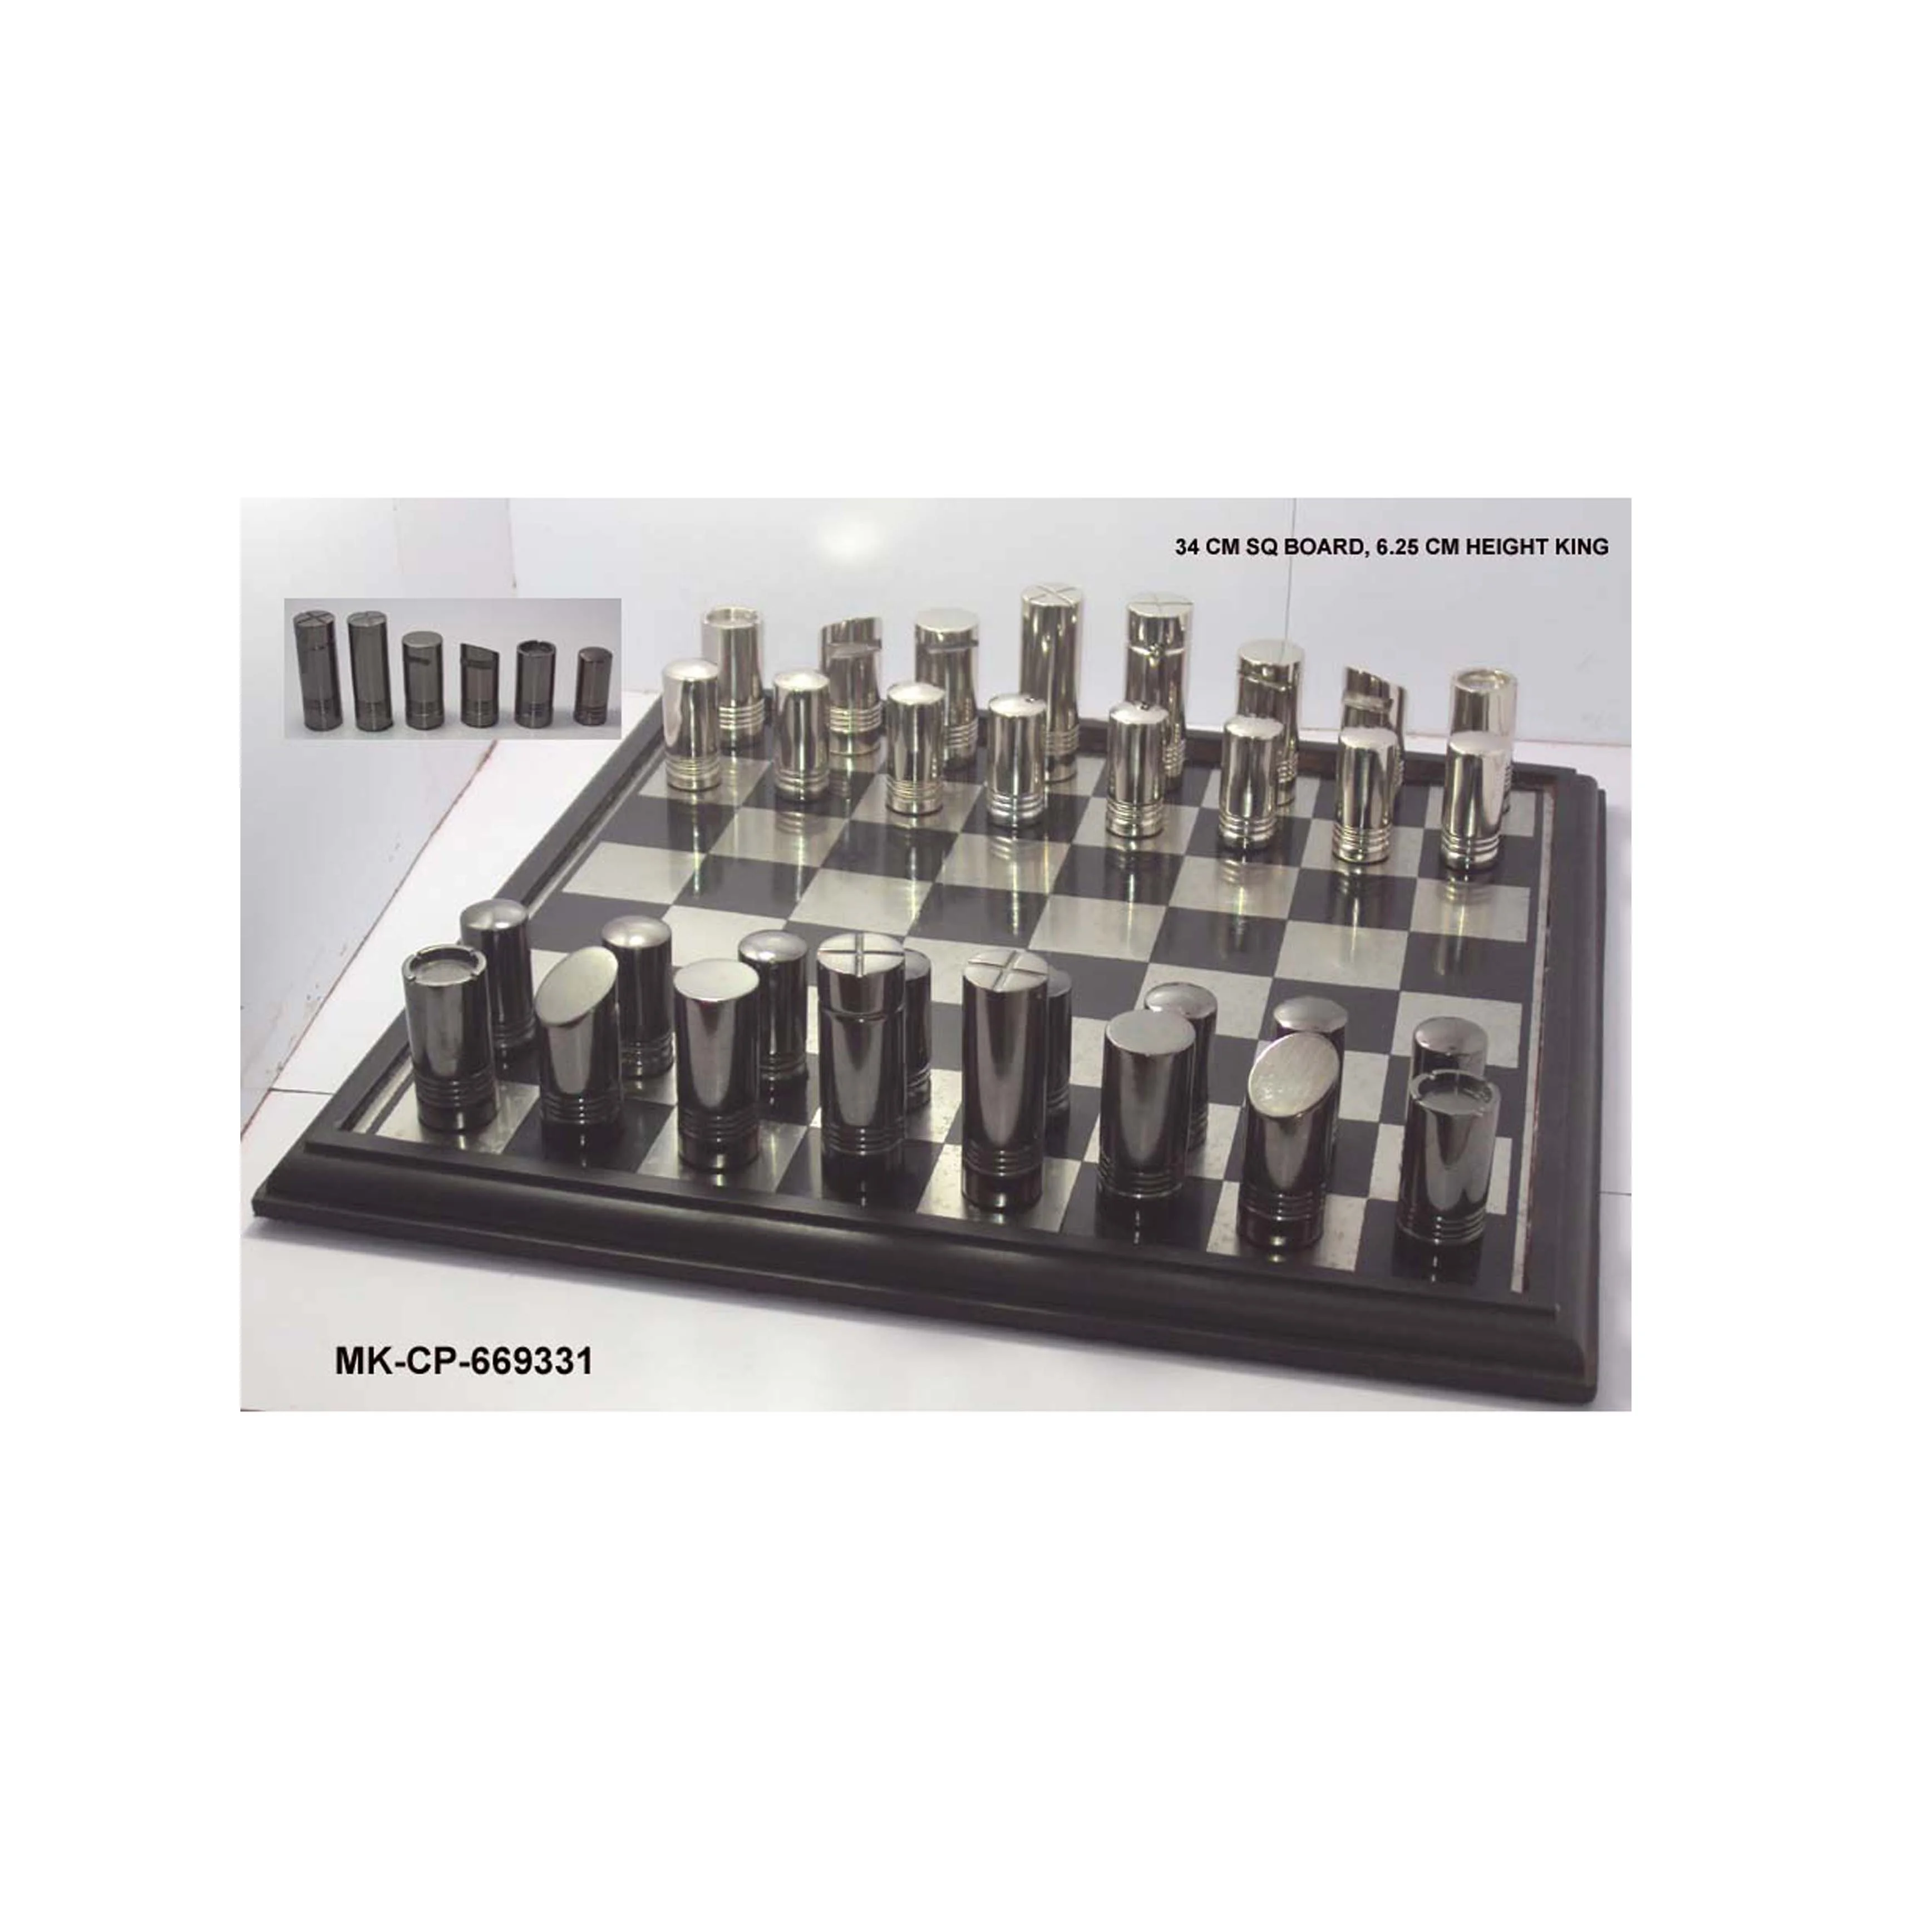 カスタムデザインの金属チェスピース Buy カスタムデザイン金属チェスの駒 品質チェスの駒 装飾チェスの駒 Product On Alibaba Com